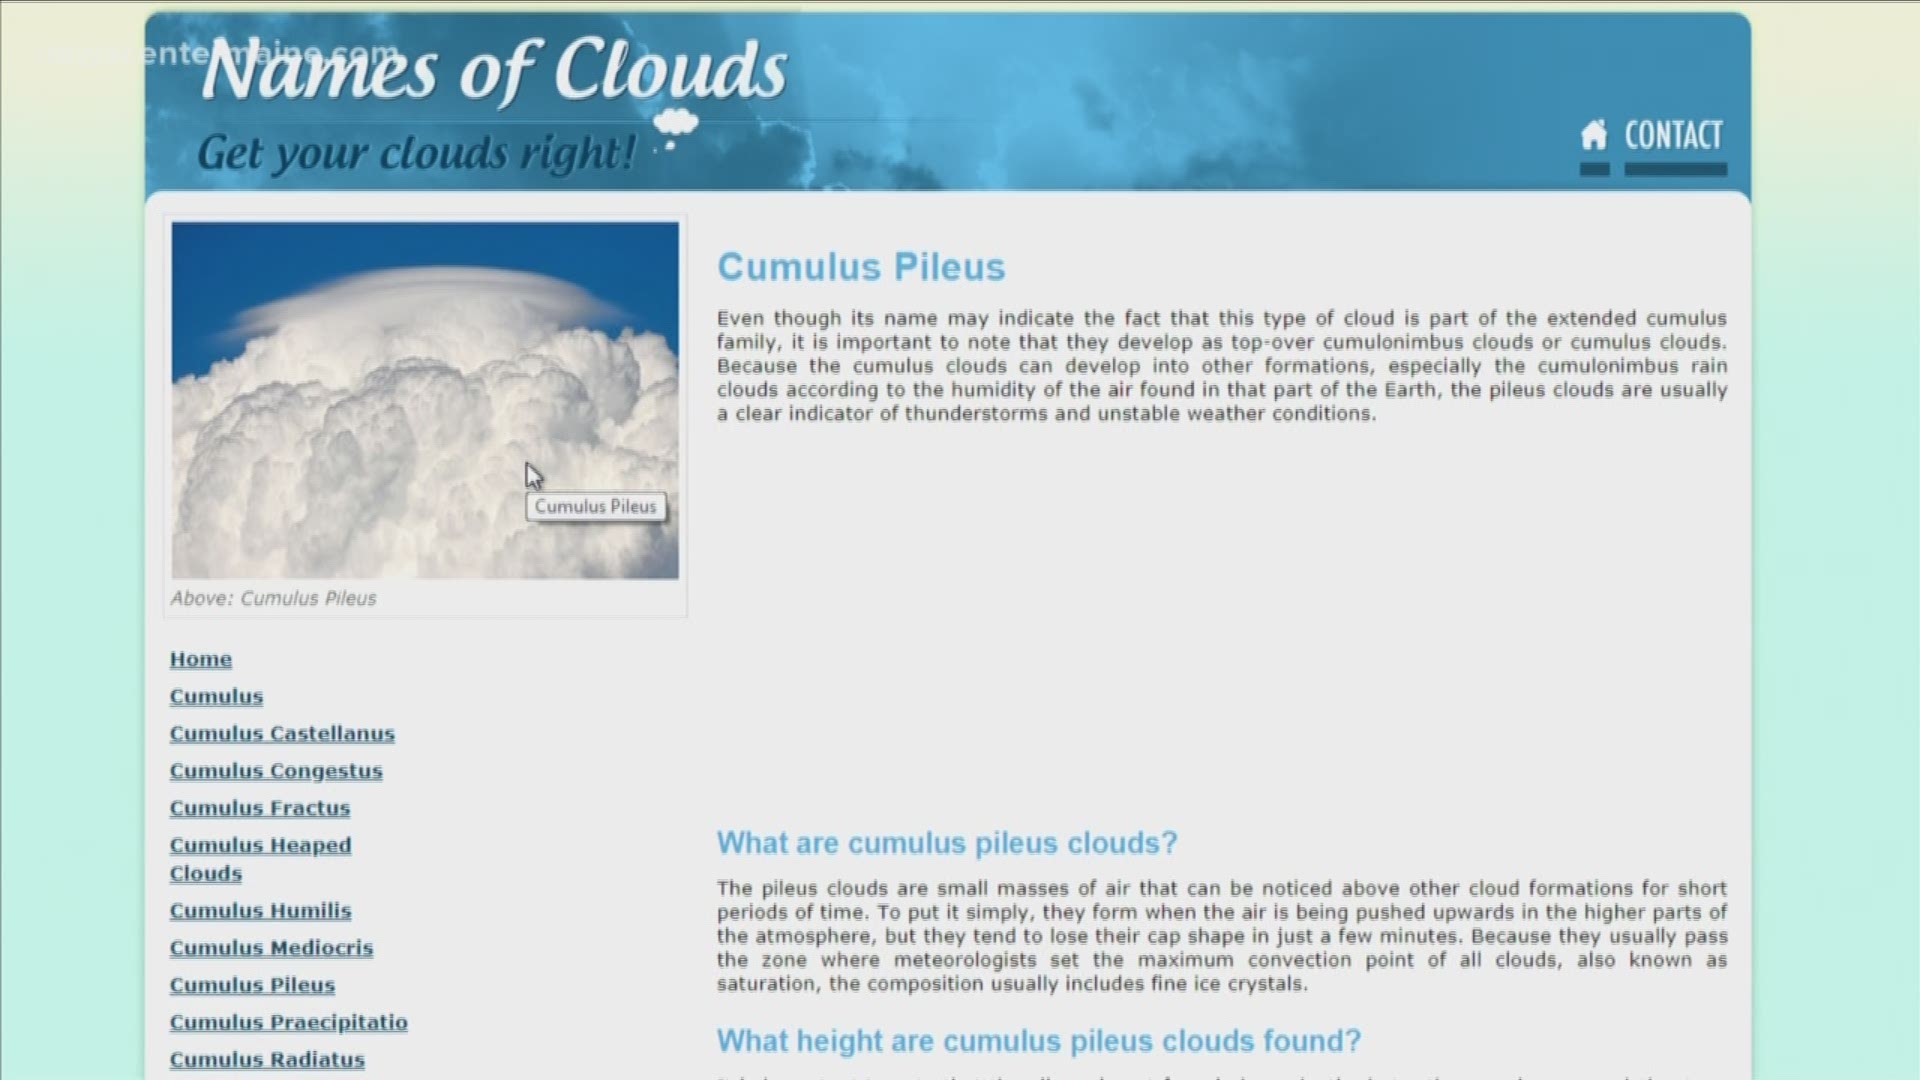 BrainDrops: Cumulus pileus clouds